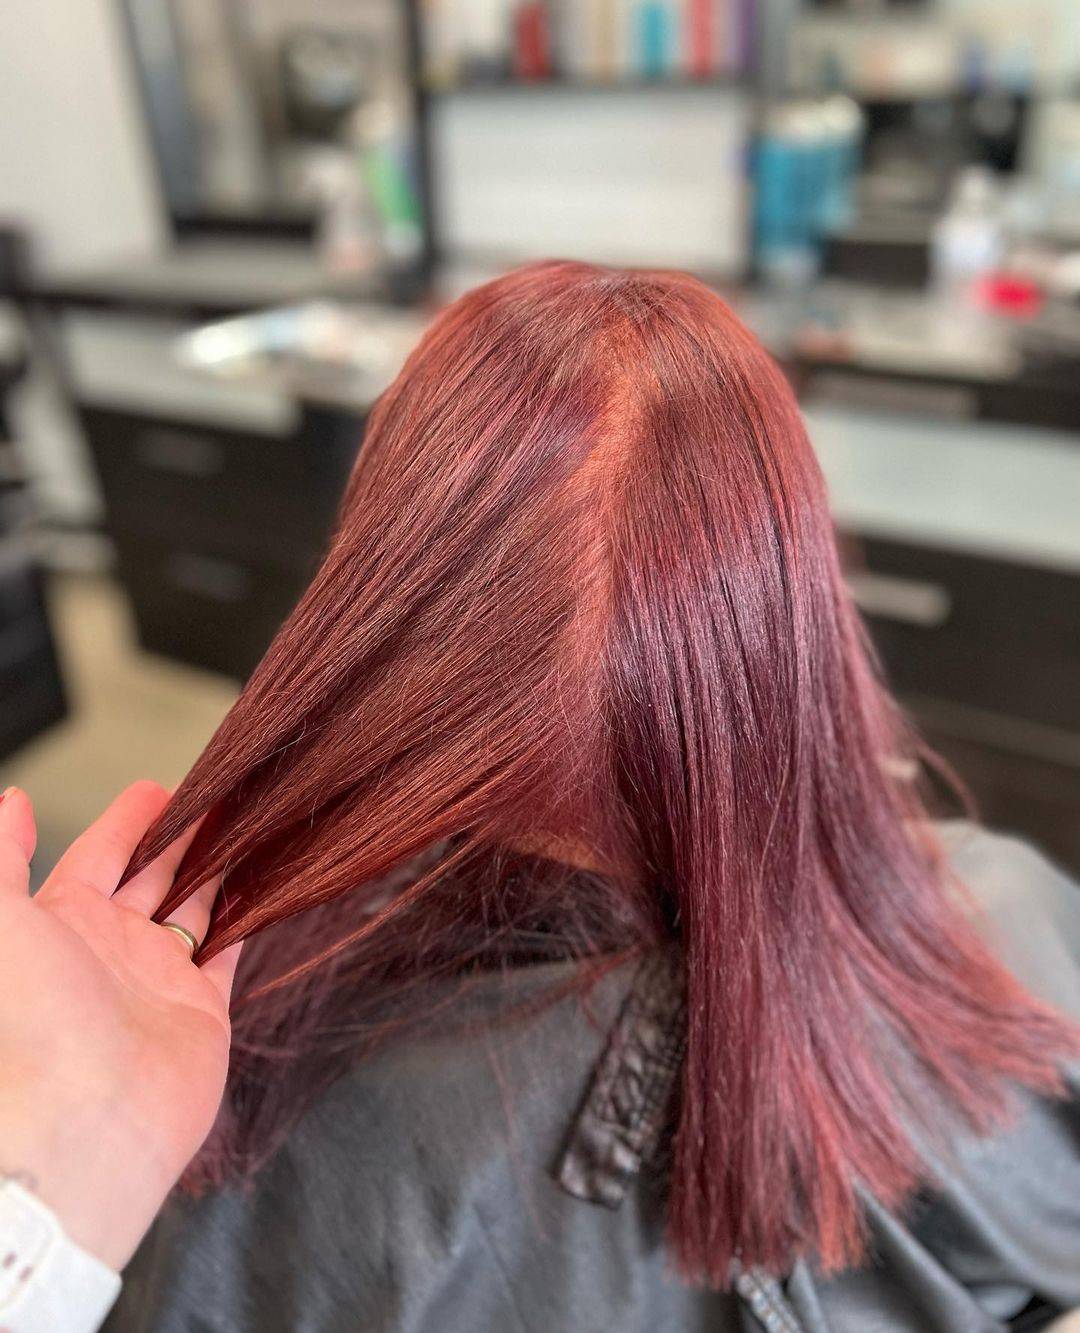 Burgundy hair color 333 burgundy hair color | burgundy hair color for women | burgundy hair color highlights Burgundy Hair Color